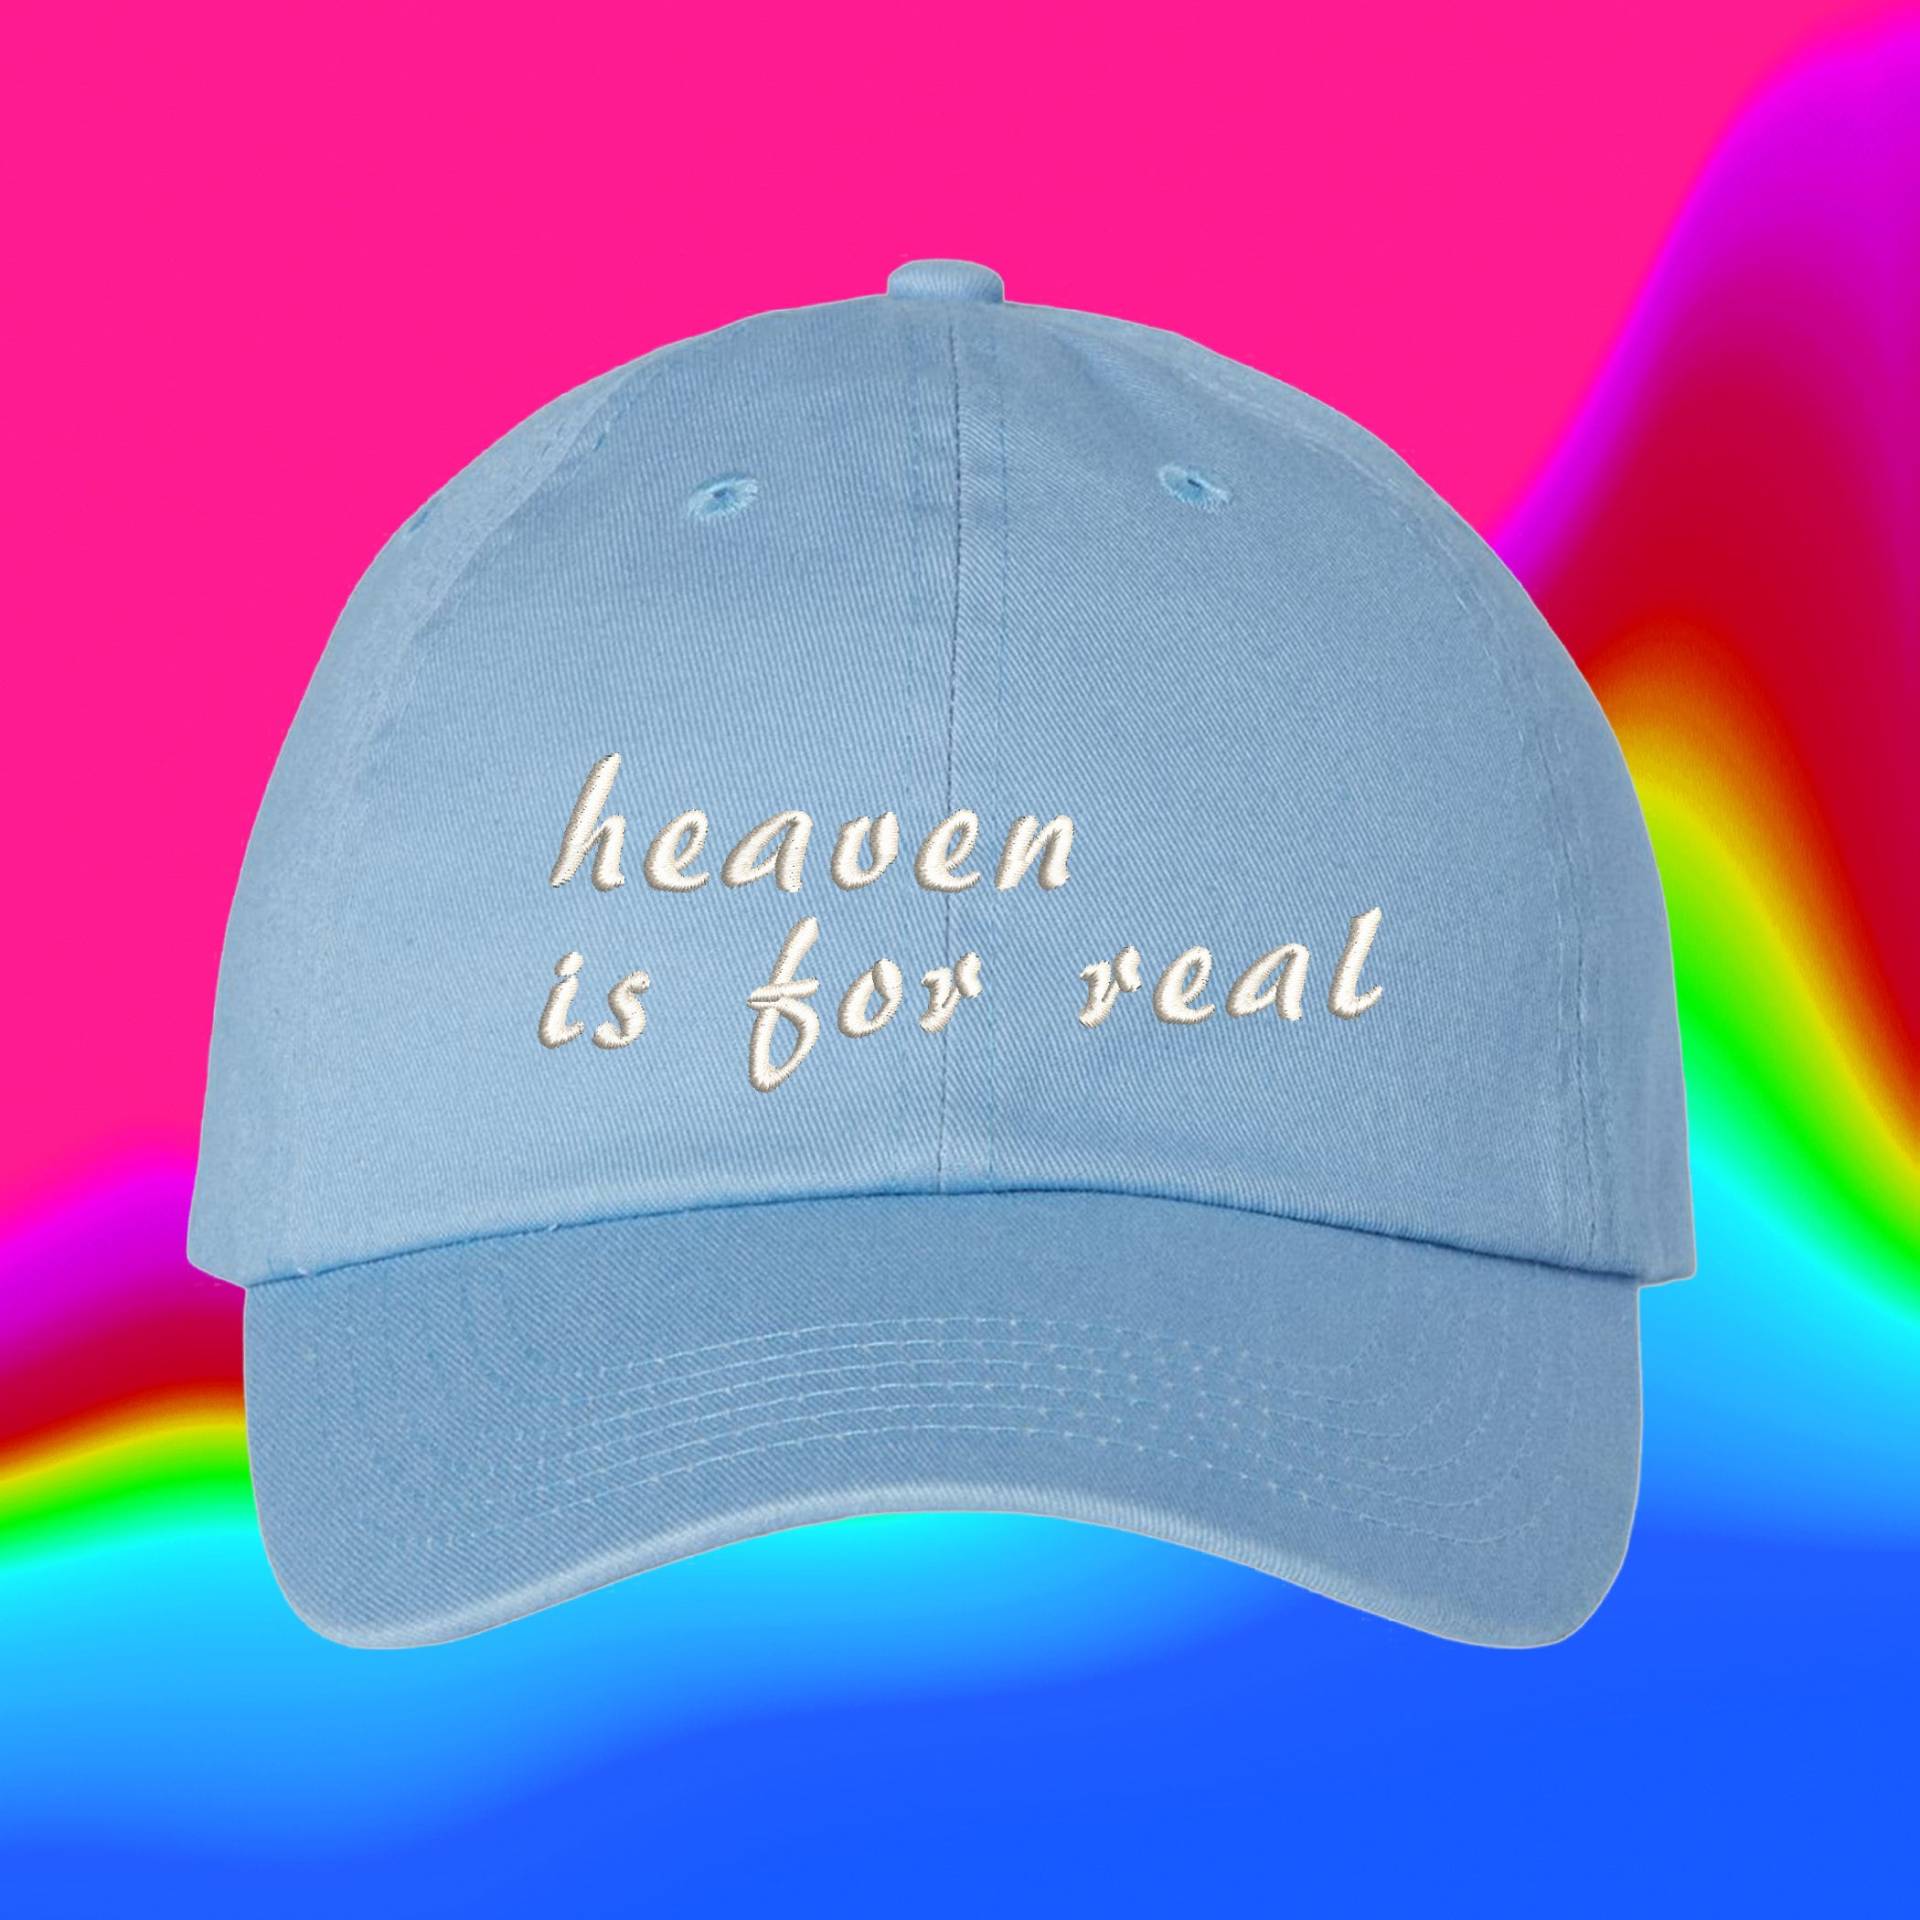 Der Himmel Ist Für Echten Hut | Benutzerdefinierte Farbverstellbare Gestickte Dad-Hut von WheredUGetThatHat